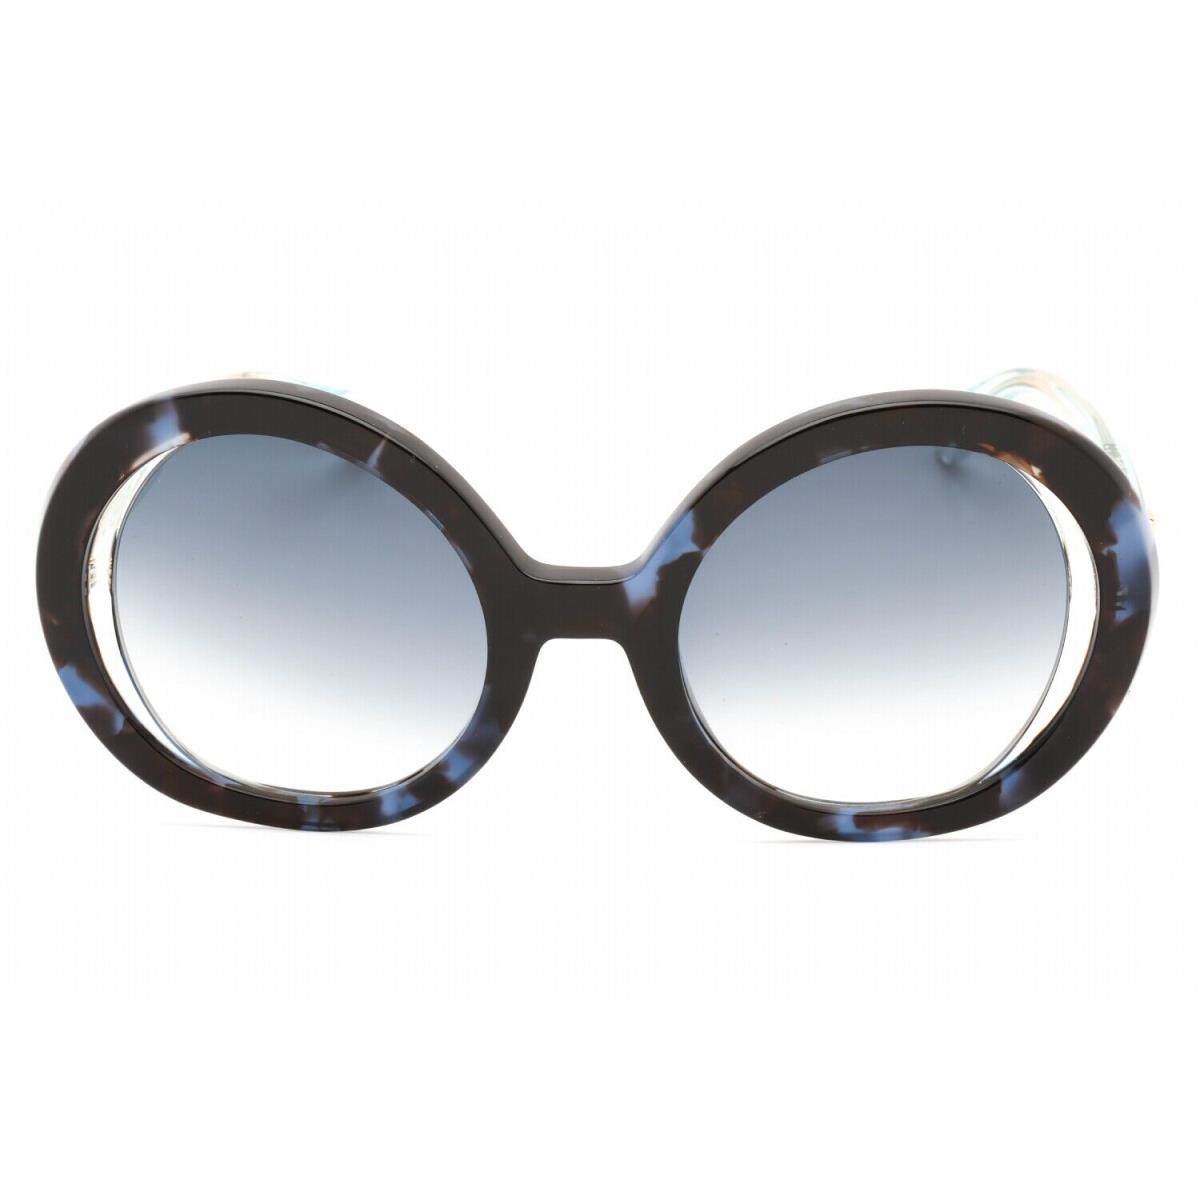 Just Cavalli SJC028-9SW-51 Sunglasses Size 51mm 140mm 23mm Blue Women